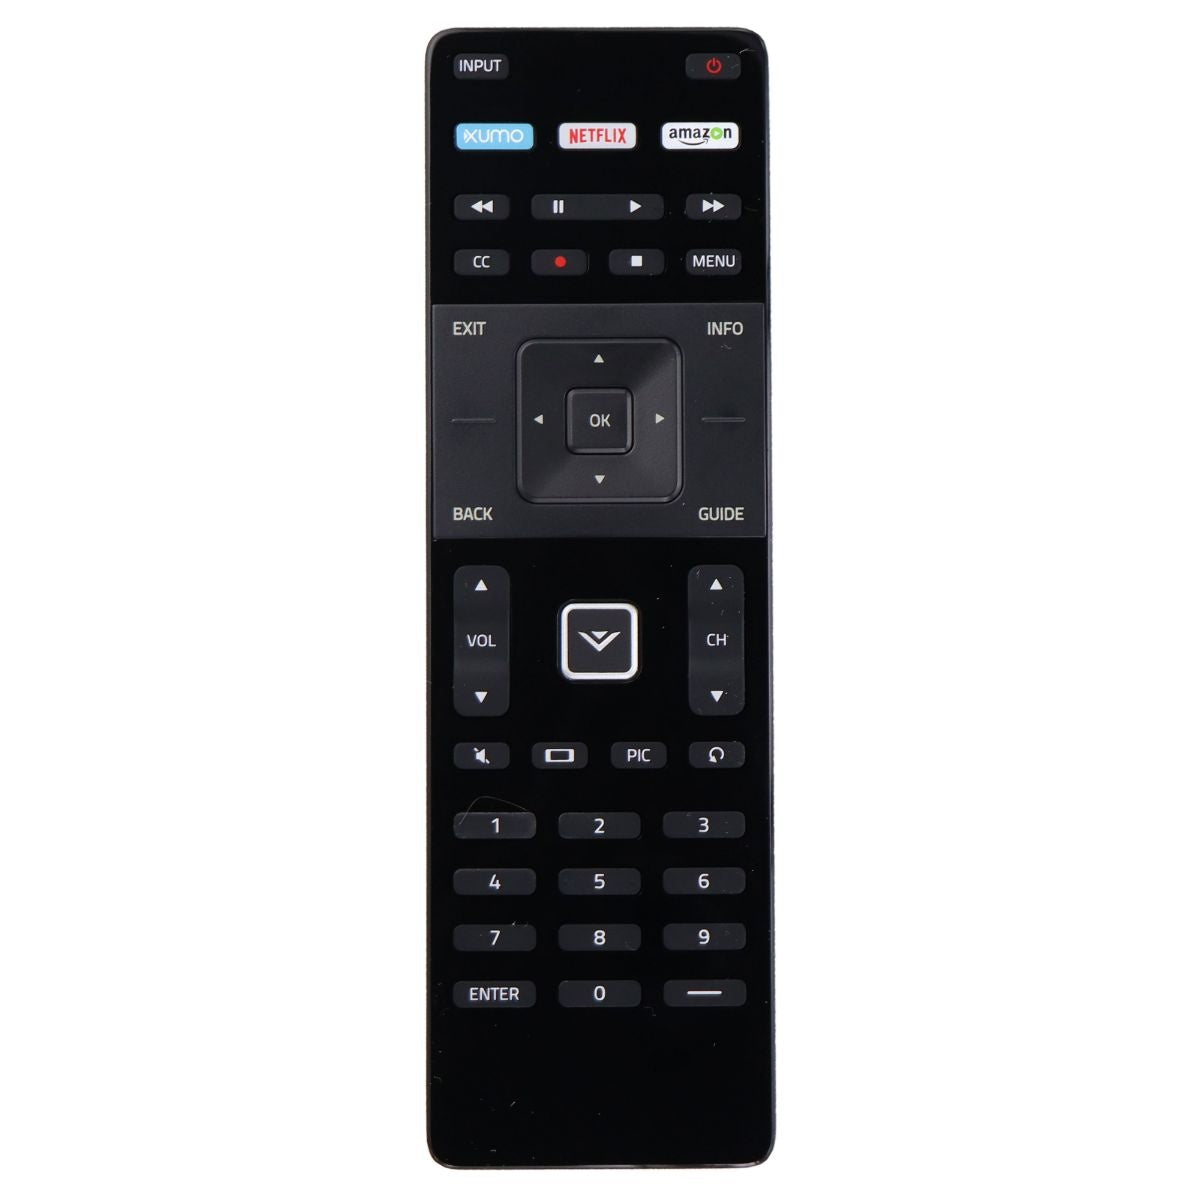 Vizio Remote Control (XRT122) for Select Vizio TVs - Black TV, Video & Audio Accessories - Remote Controls Vizio    - Simple Cell Bulk Wholesale Pricing - USA Seller